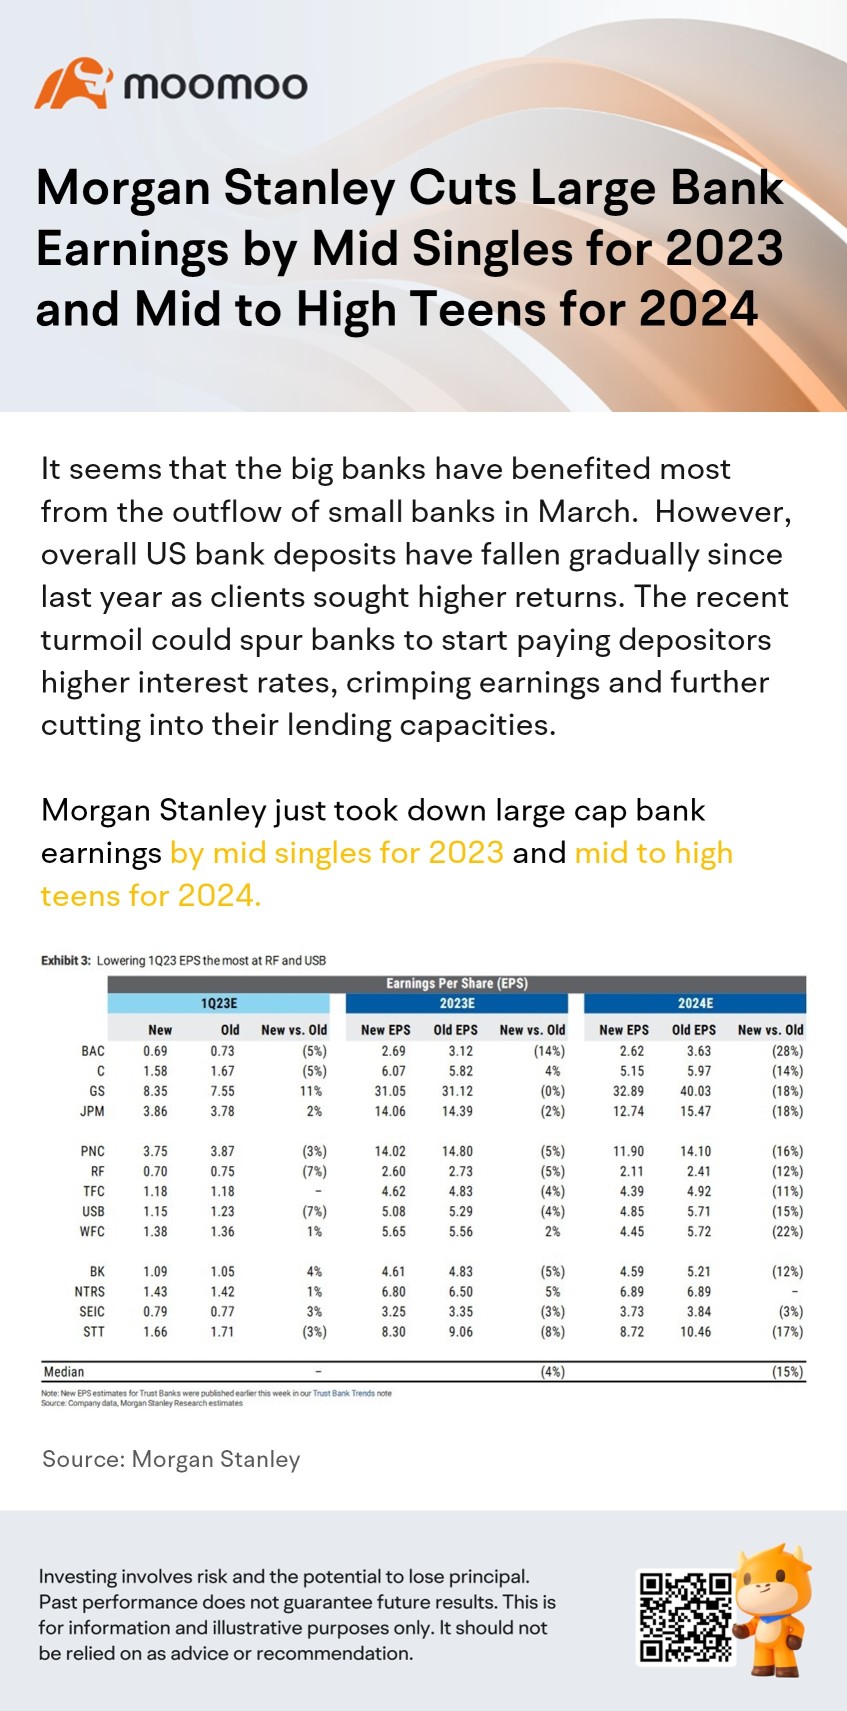 モルガン・スタンレーは、2023年の大手銀行の収益を中間シングル桁で、2024年の収益を中間から高いティーンでカットします。